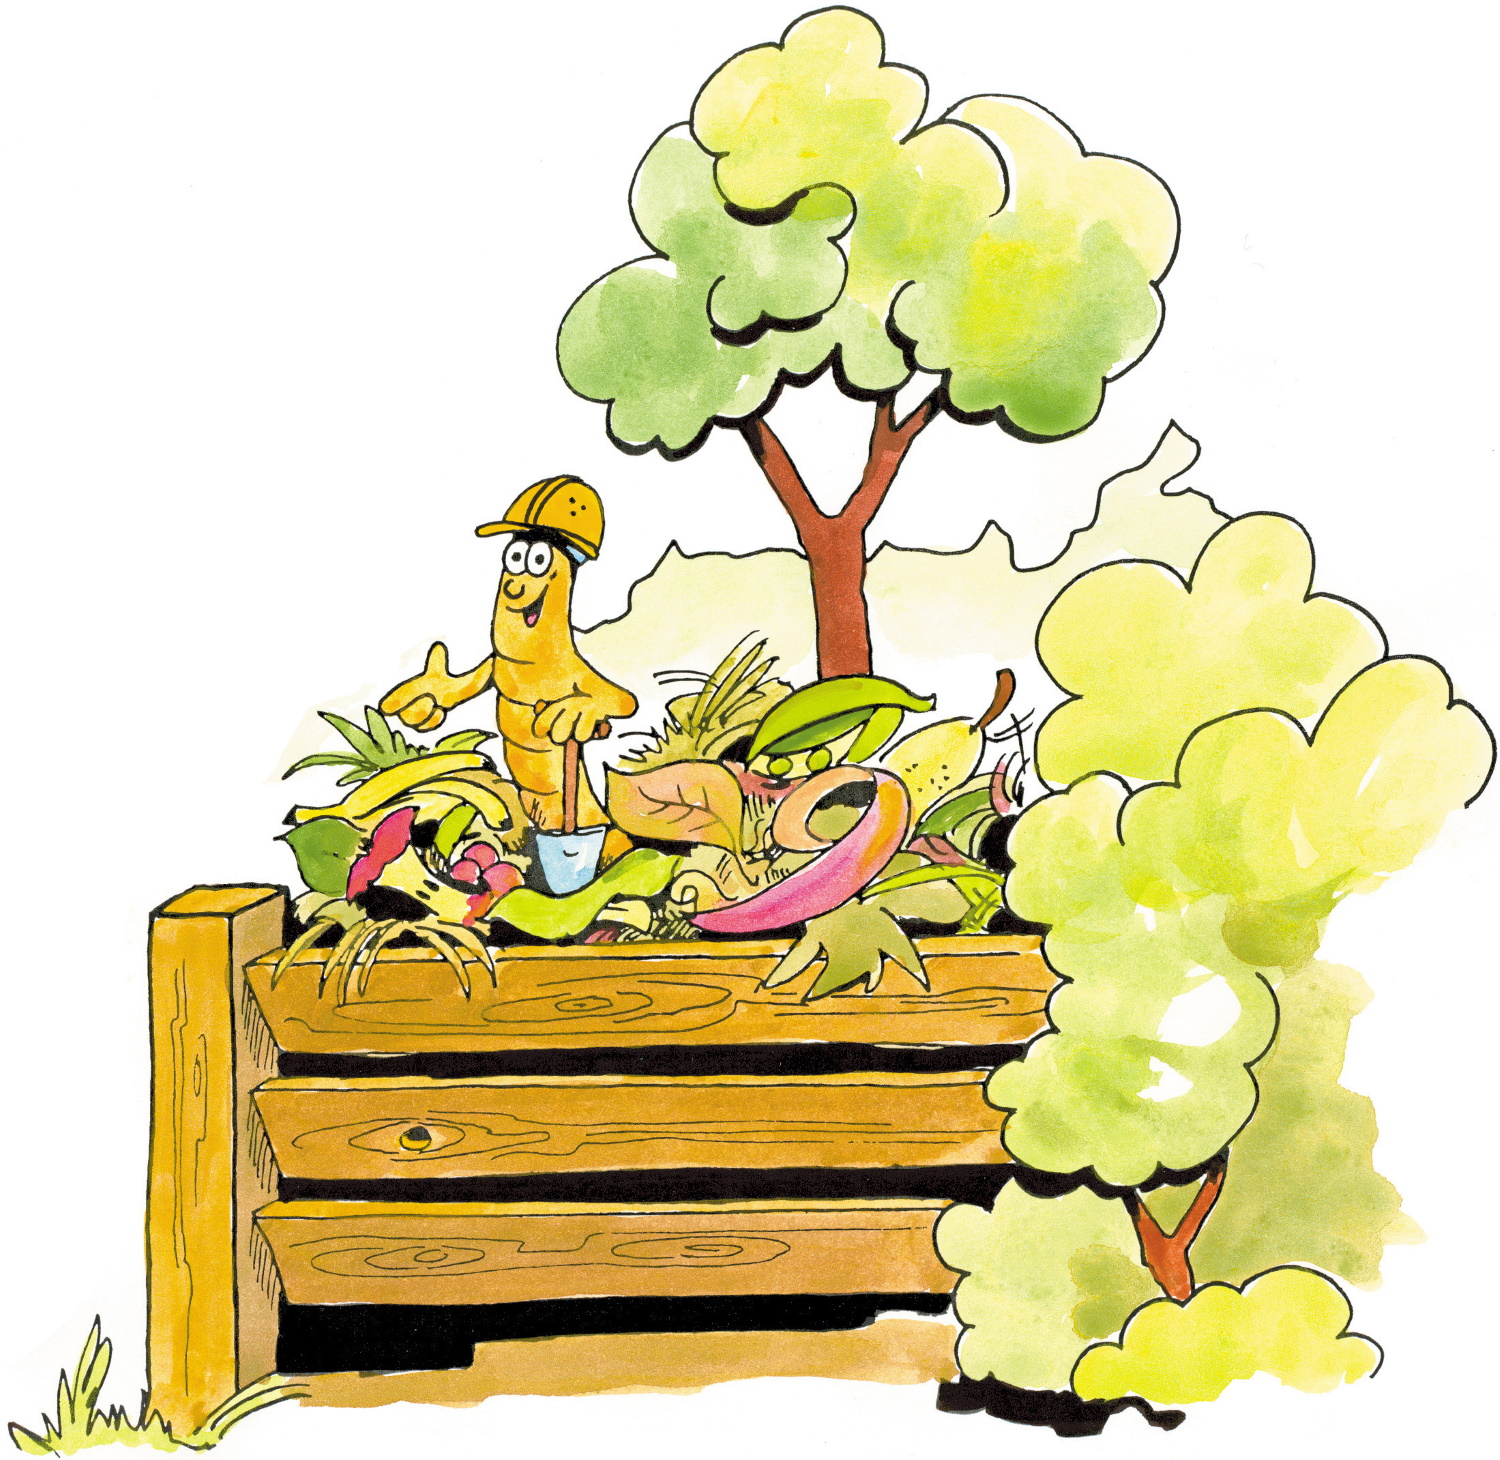 AZV Hof gewährt Zuschuss zum Komposter